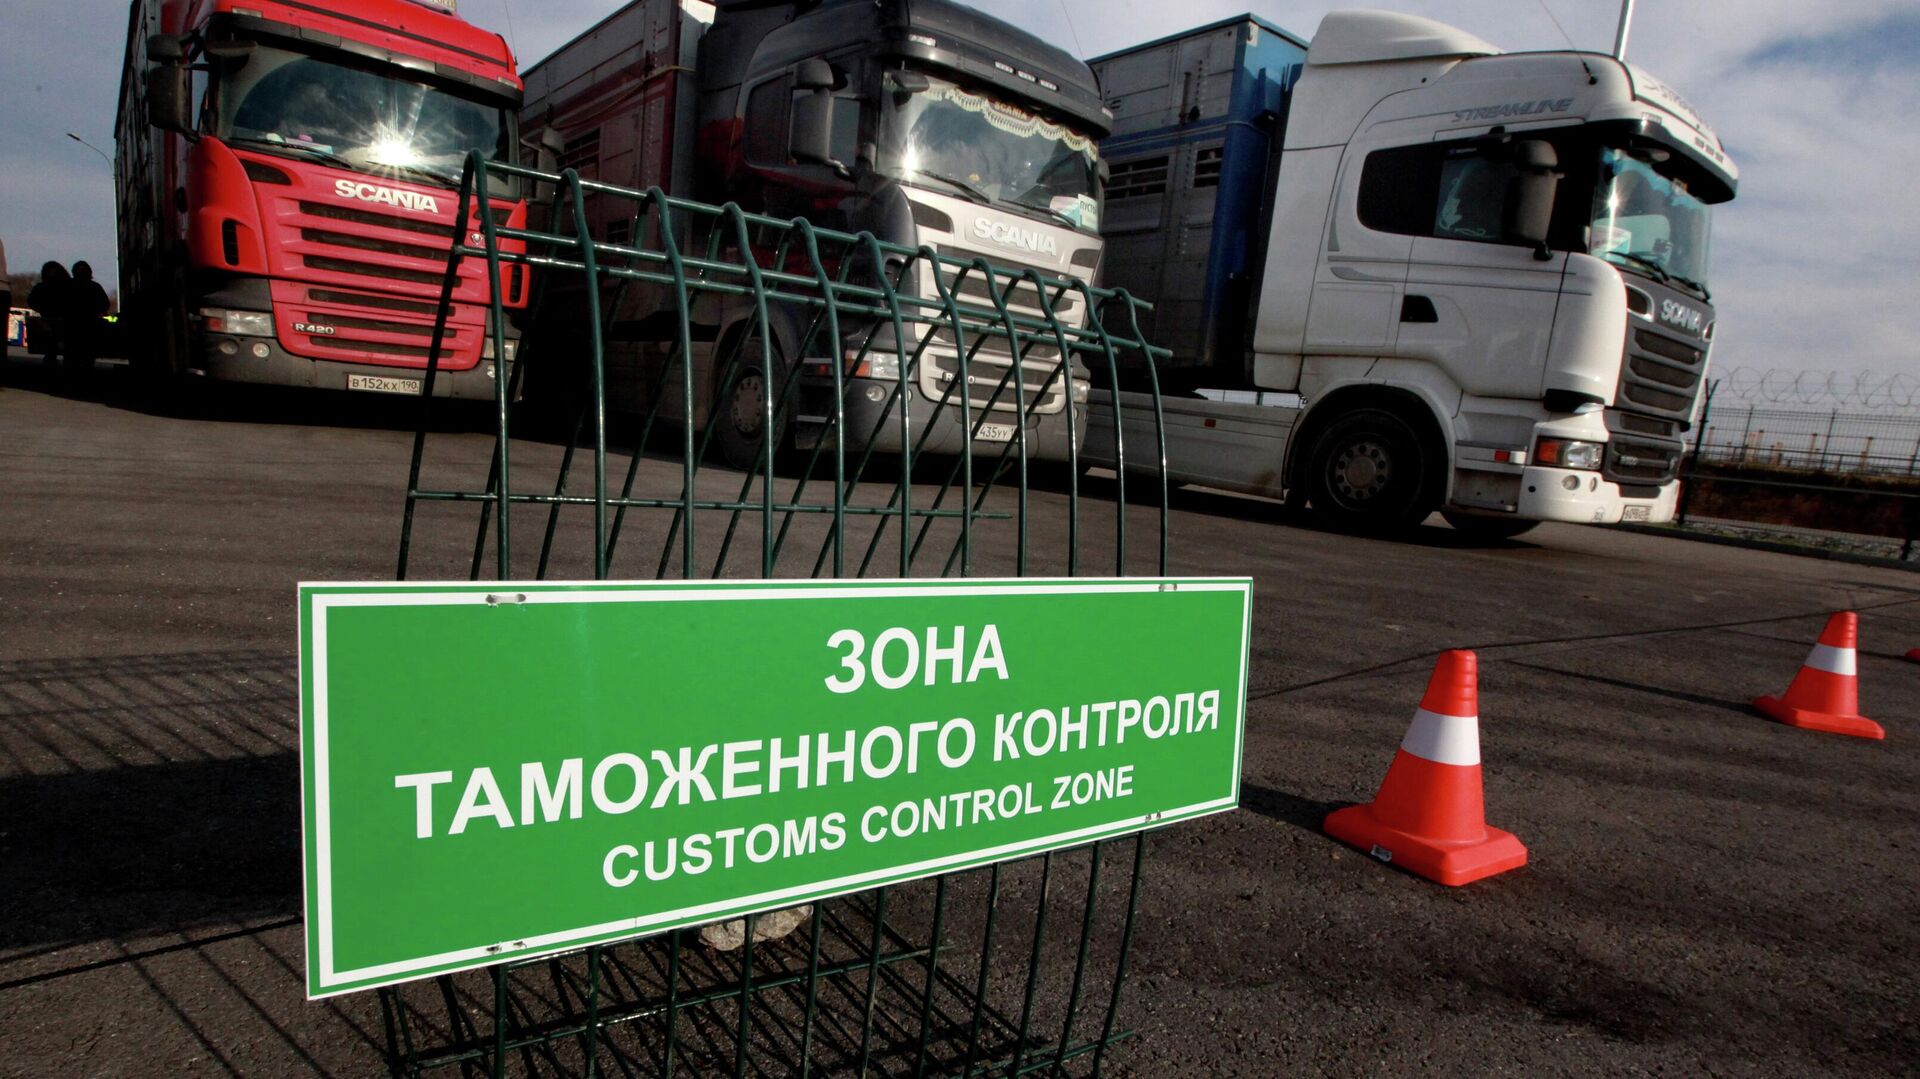 RTS: Швейцария продолжает экспортировать товары в Россию